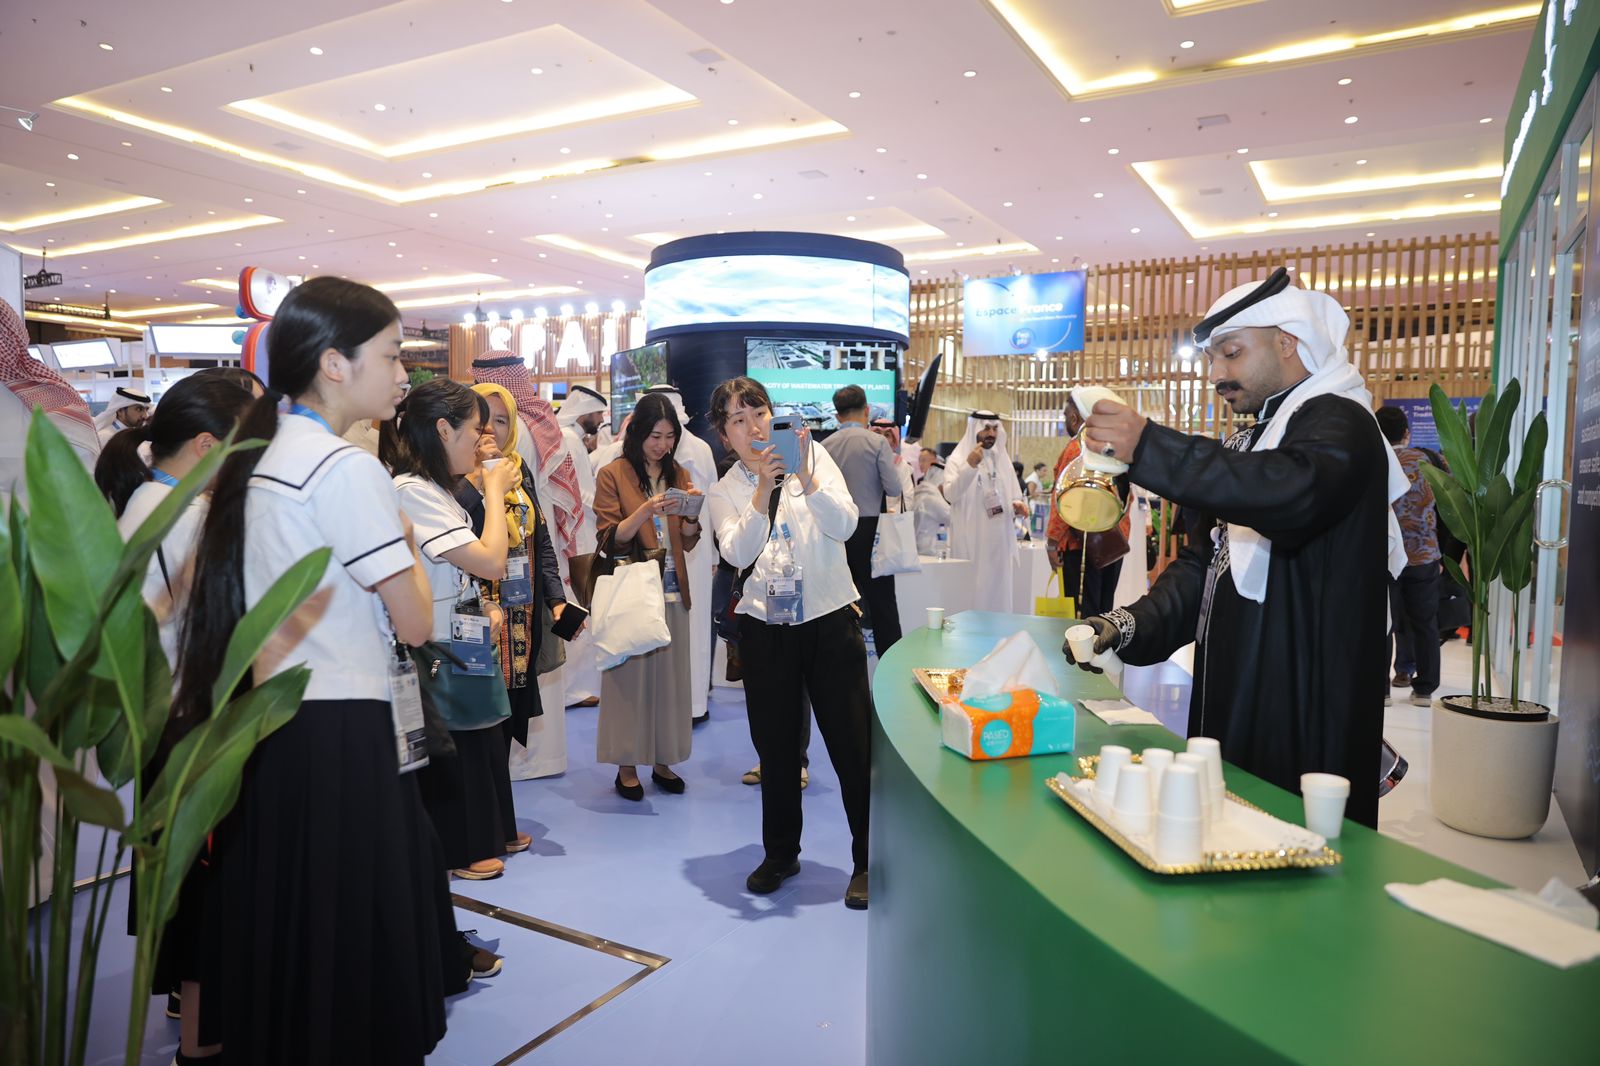 القهوة والتمور السعودية تلفت الأنظار وتجذب زوار معرض المنتدى العالمي للمياه بإندونيسيا